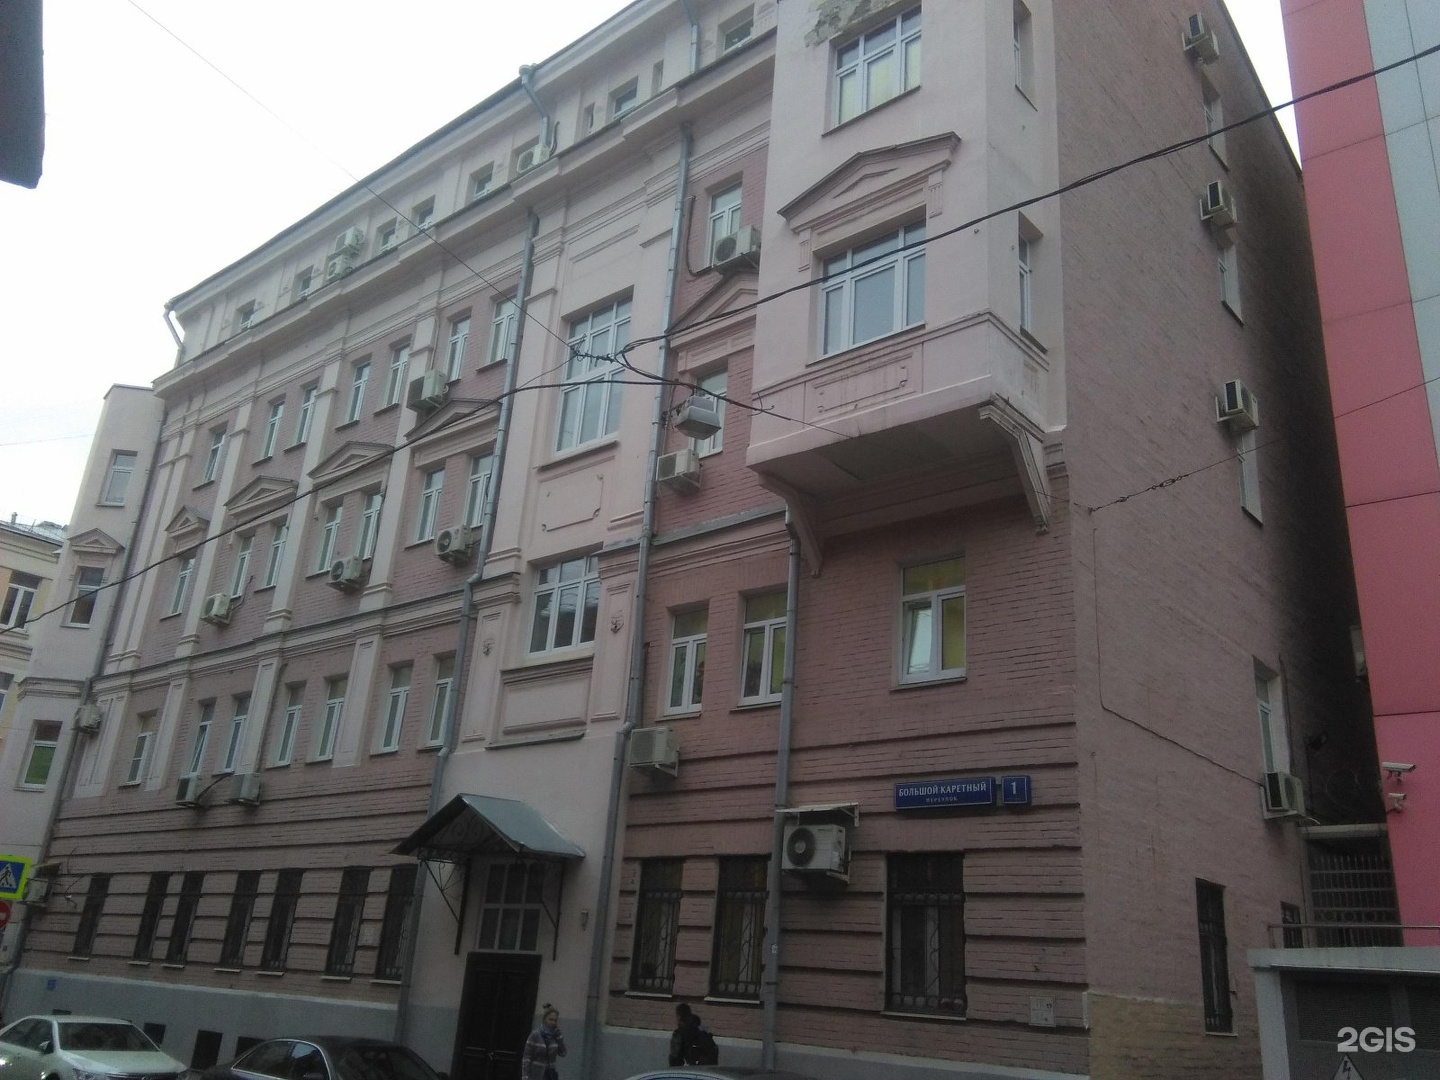 Большой каретный переулок на карте москвы фото